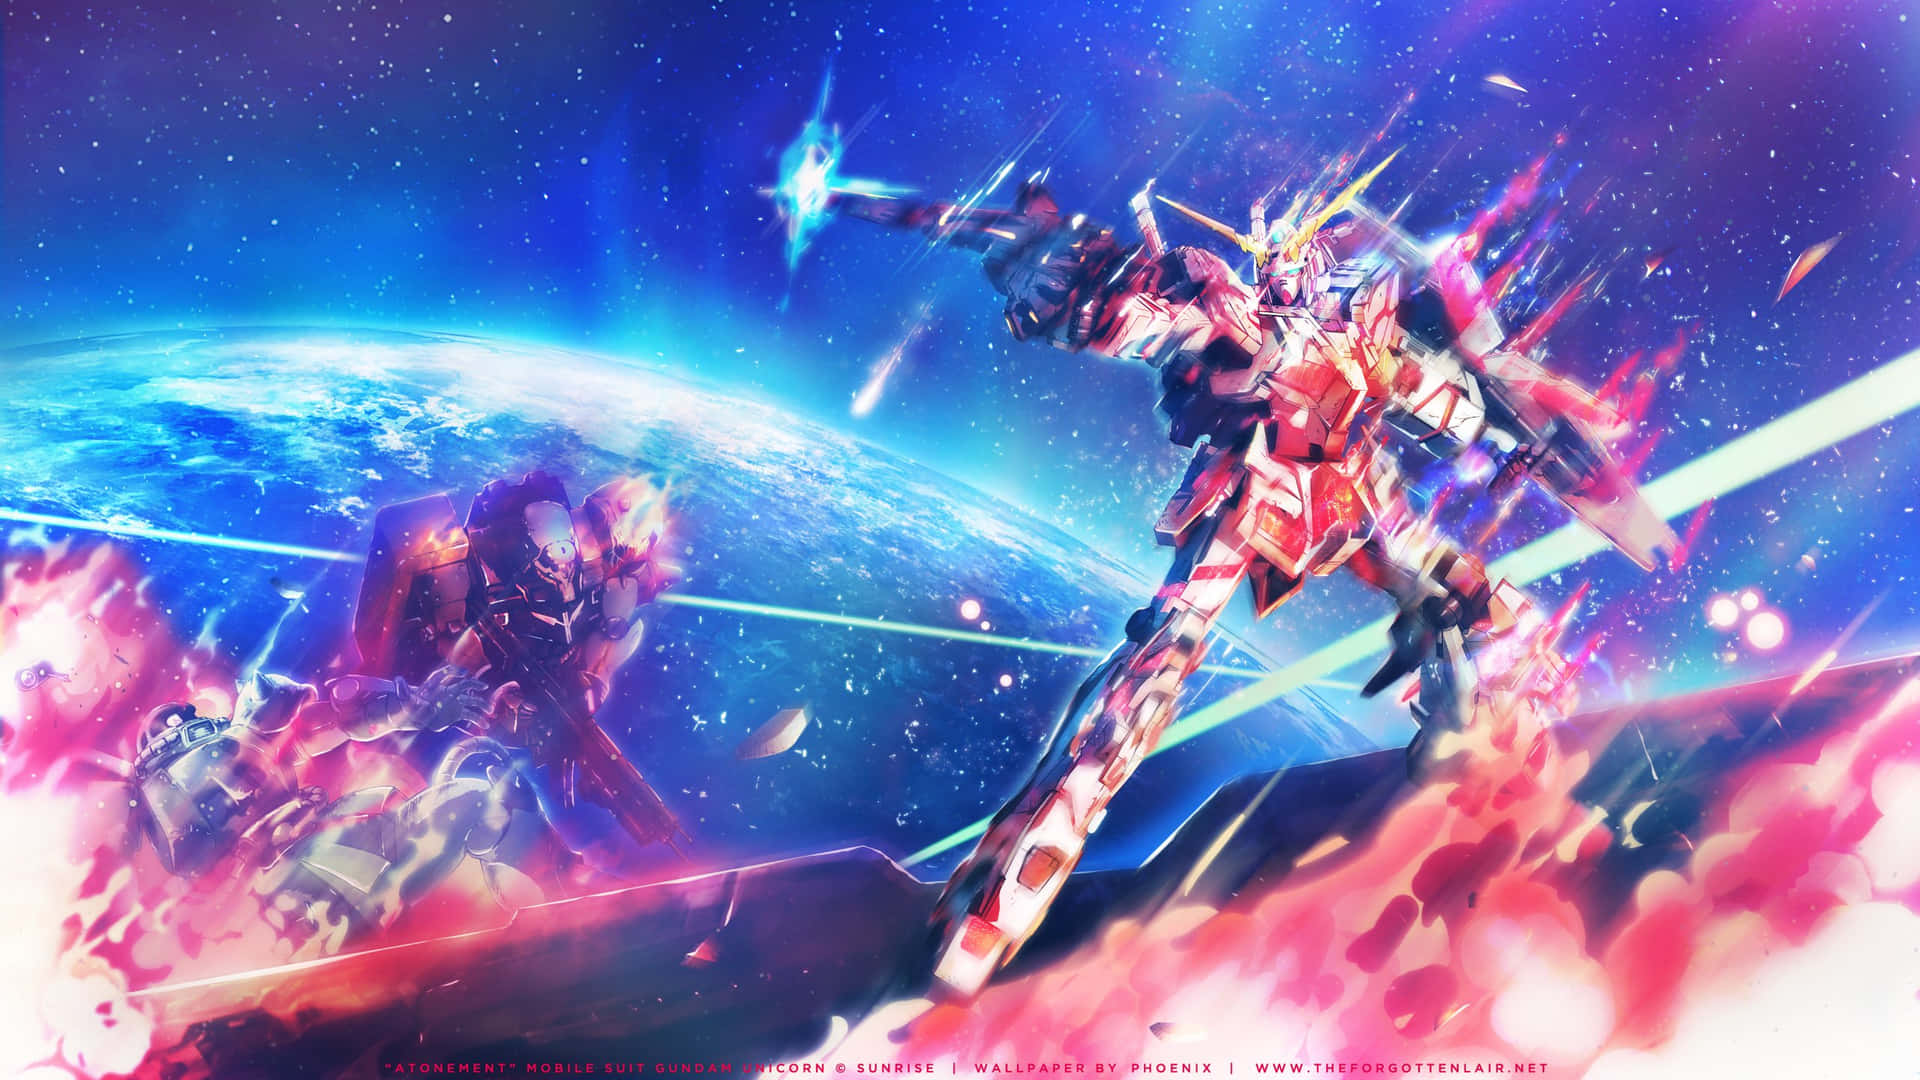 Nyd skønheden af Gundam i HD-kvalitet på dit skrivebord. Wallpaper